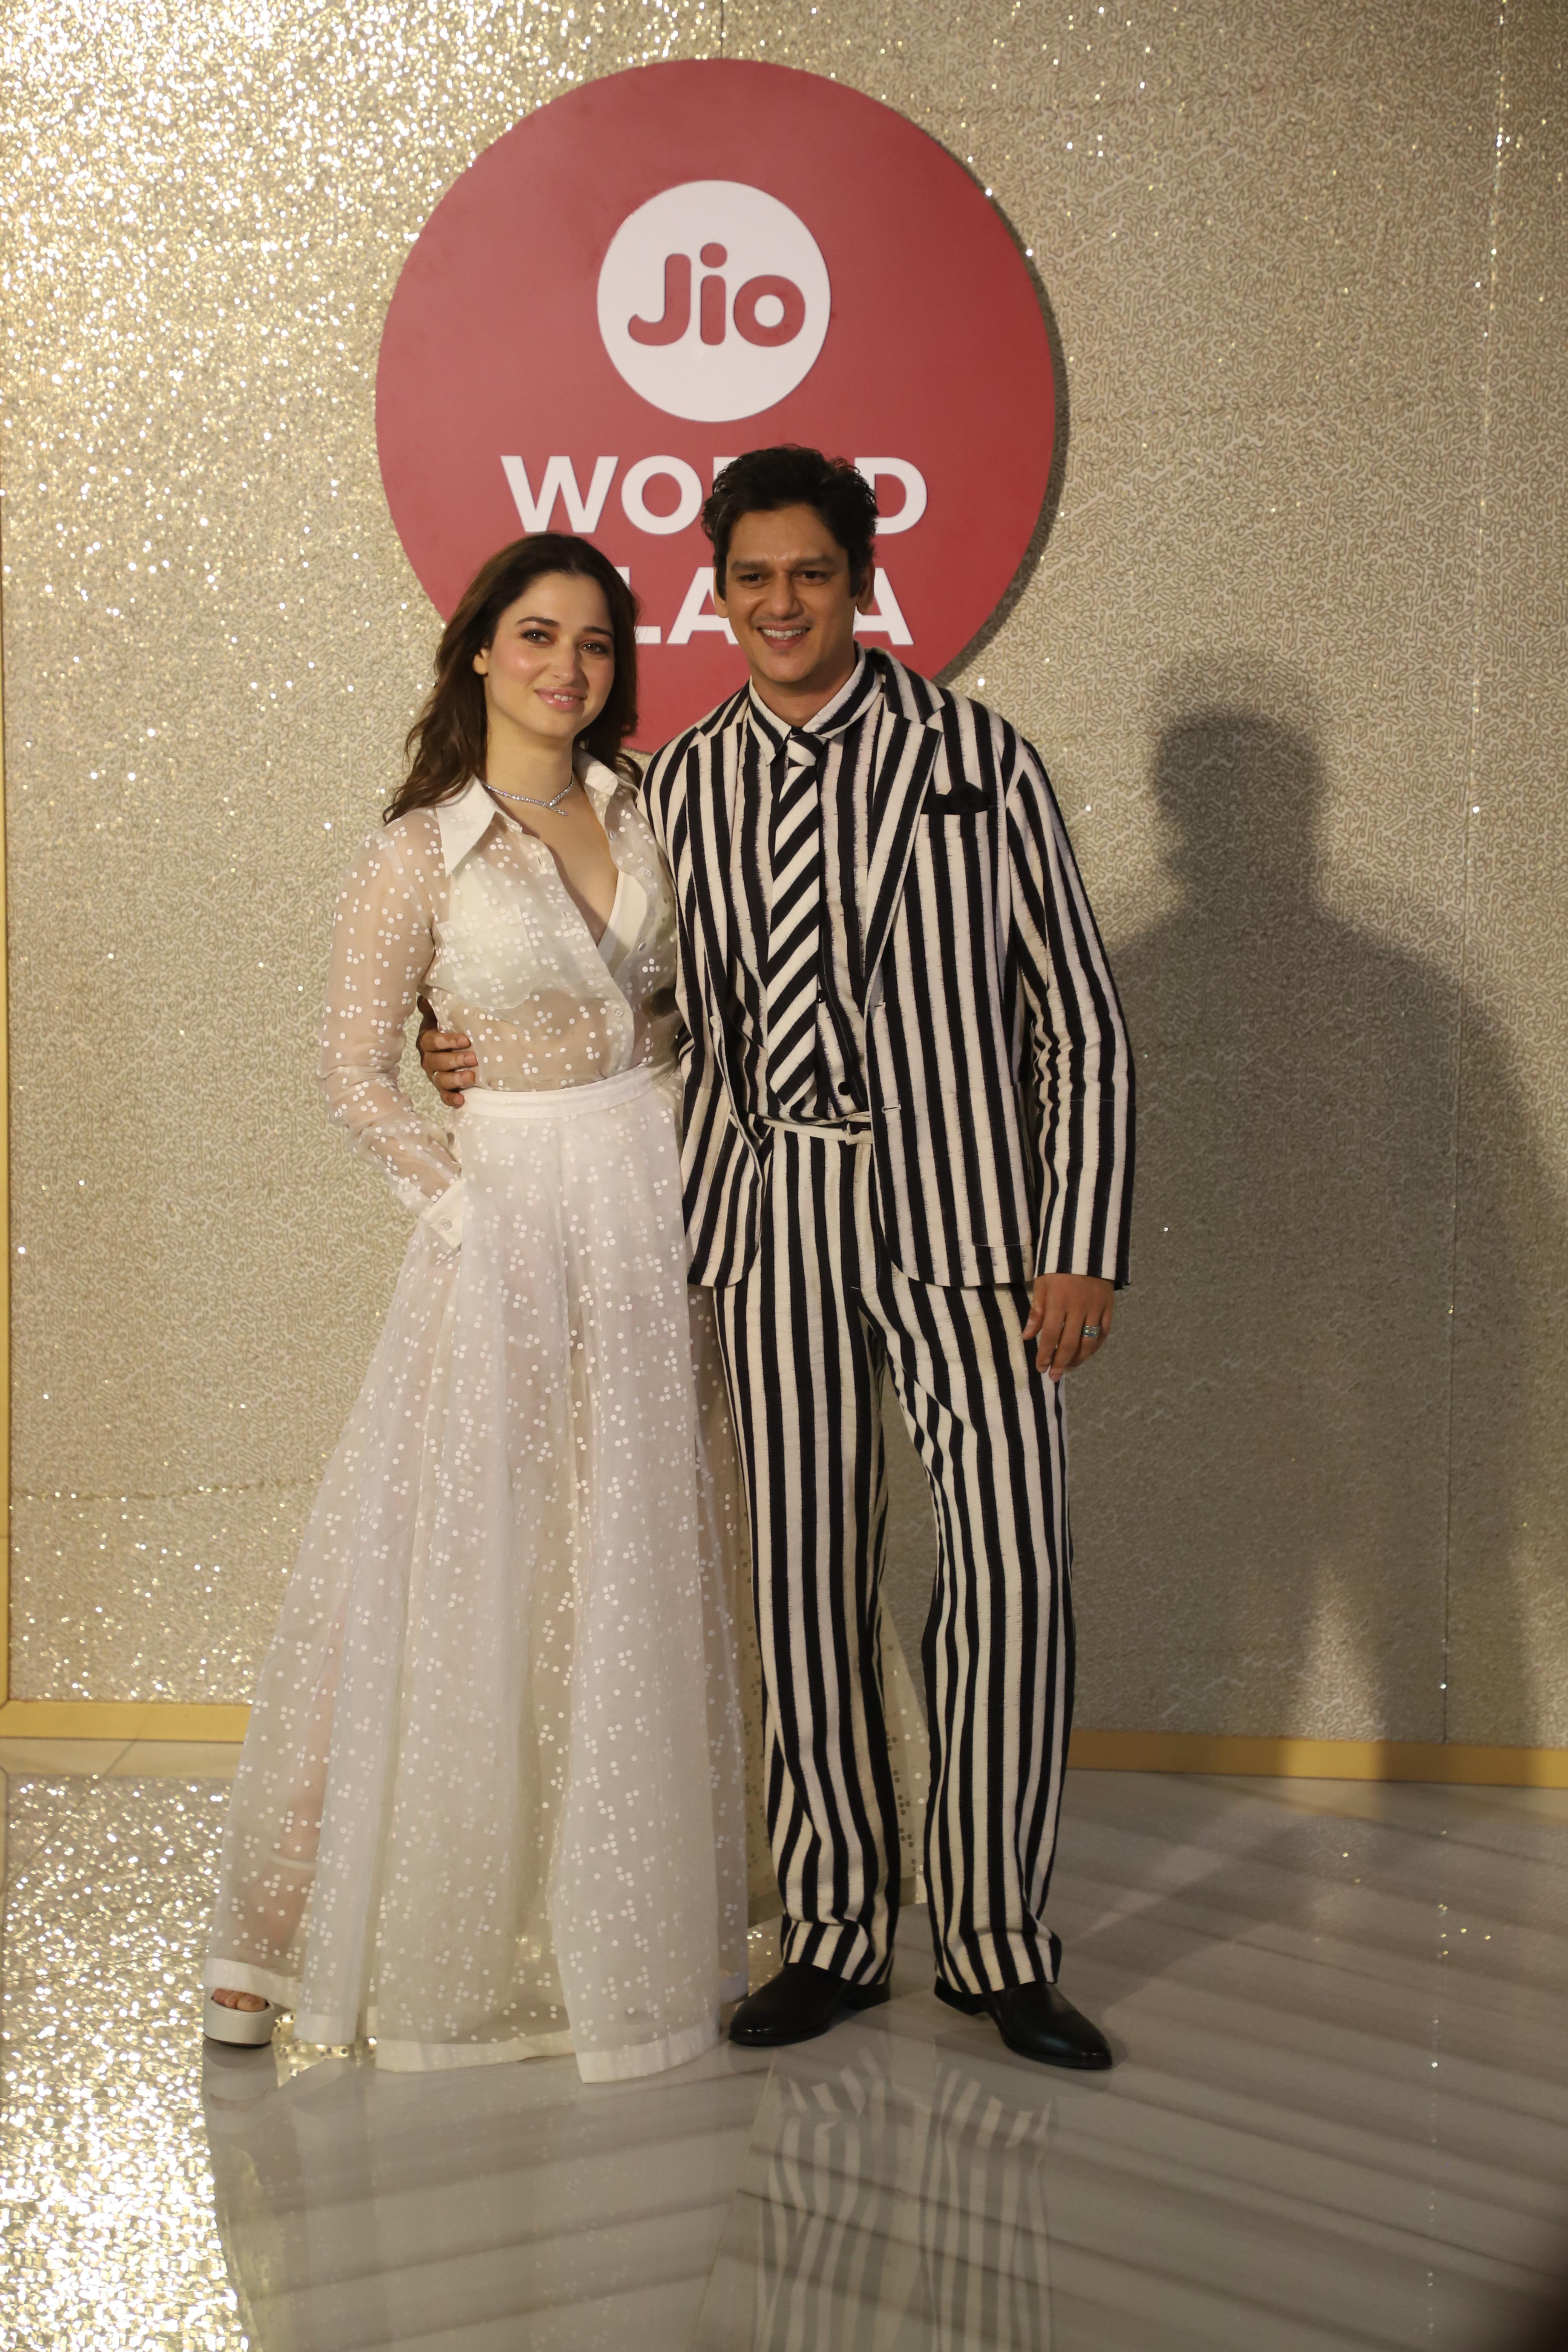 Tamannaah was dressed in a white ensemble while Vijay Varma wore a black&white striped ensemble!